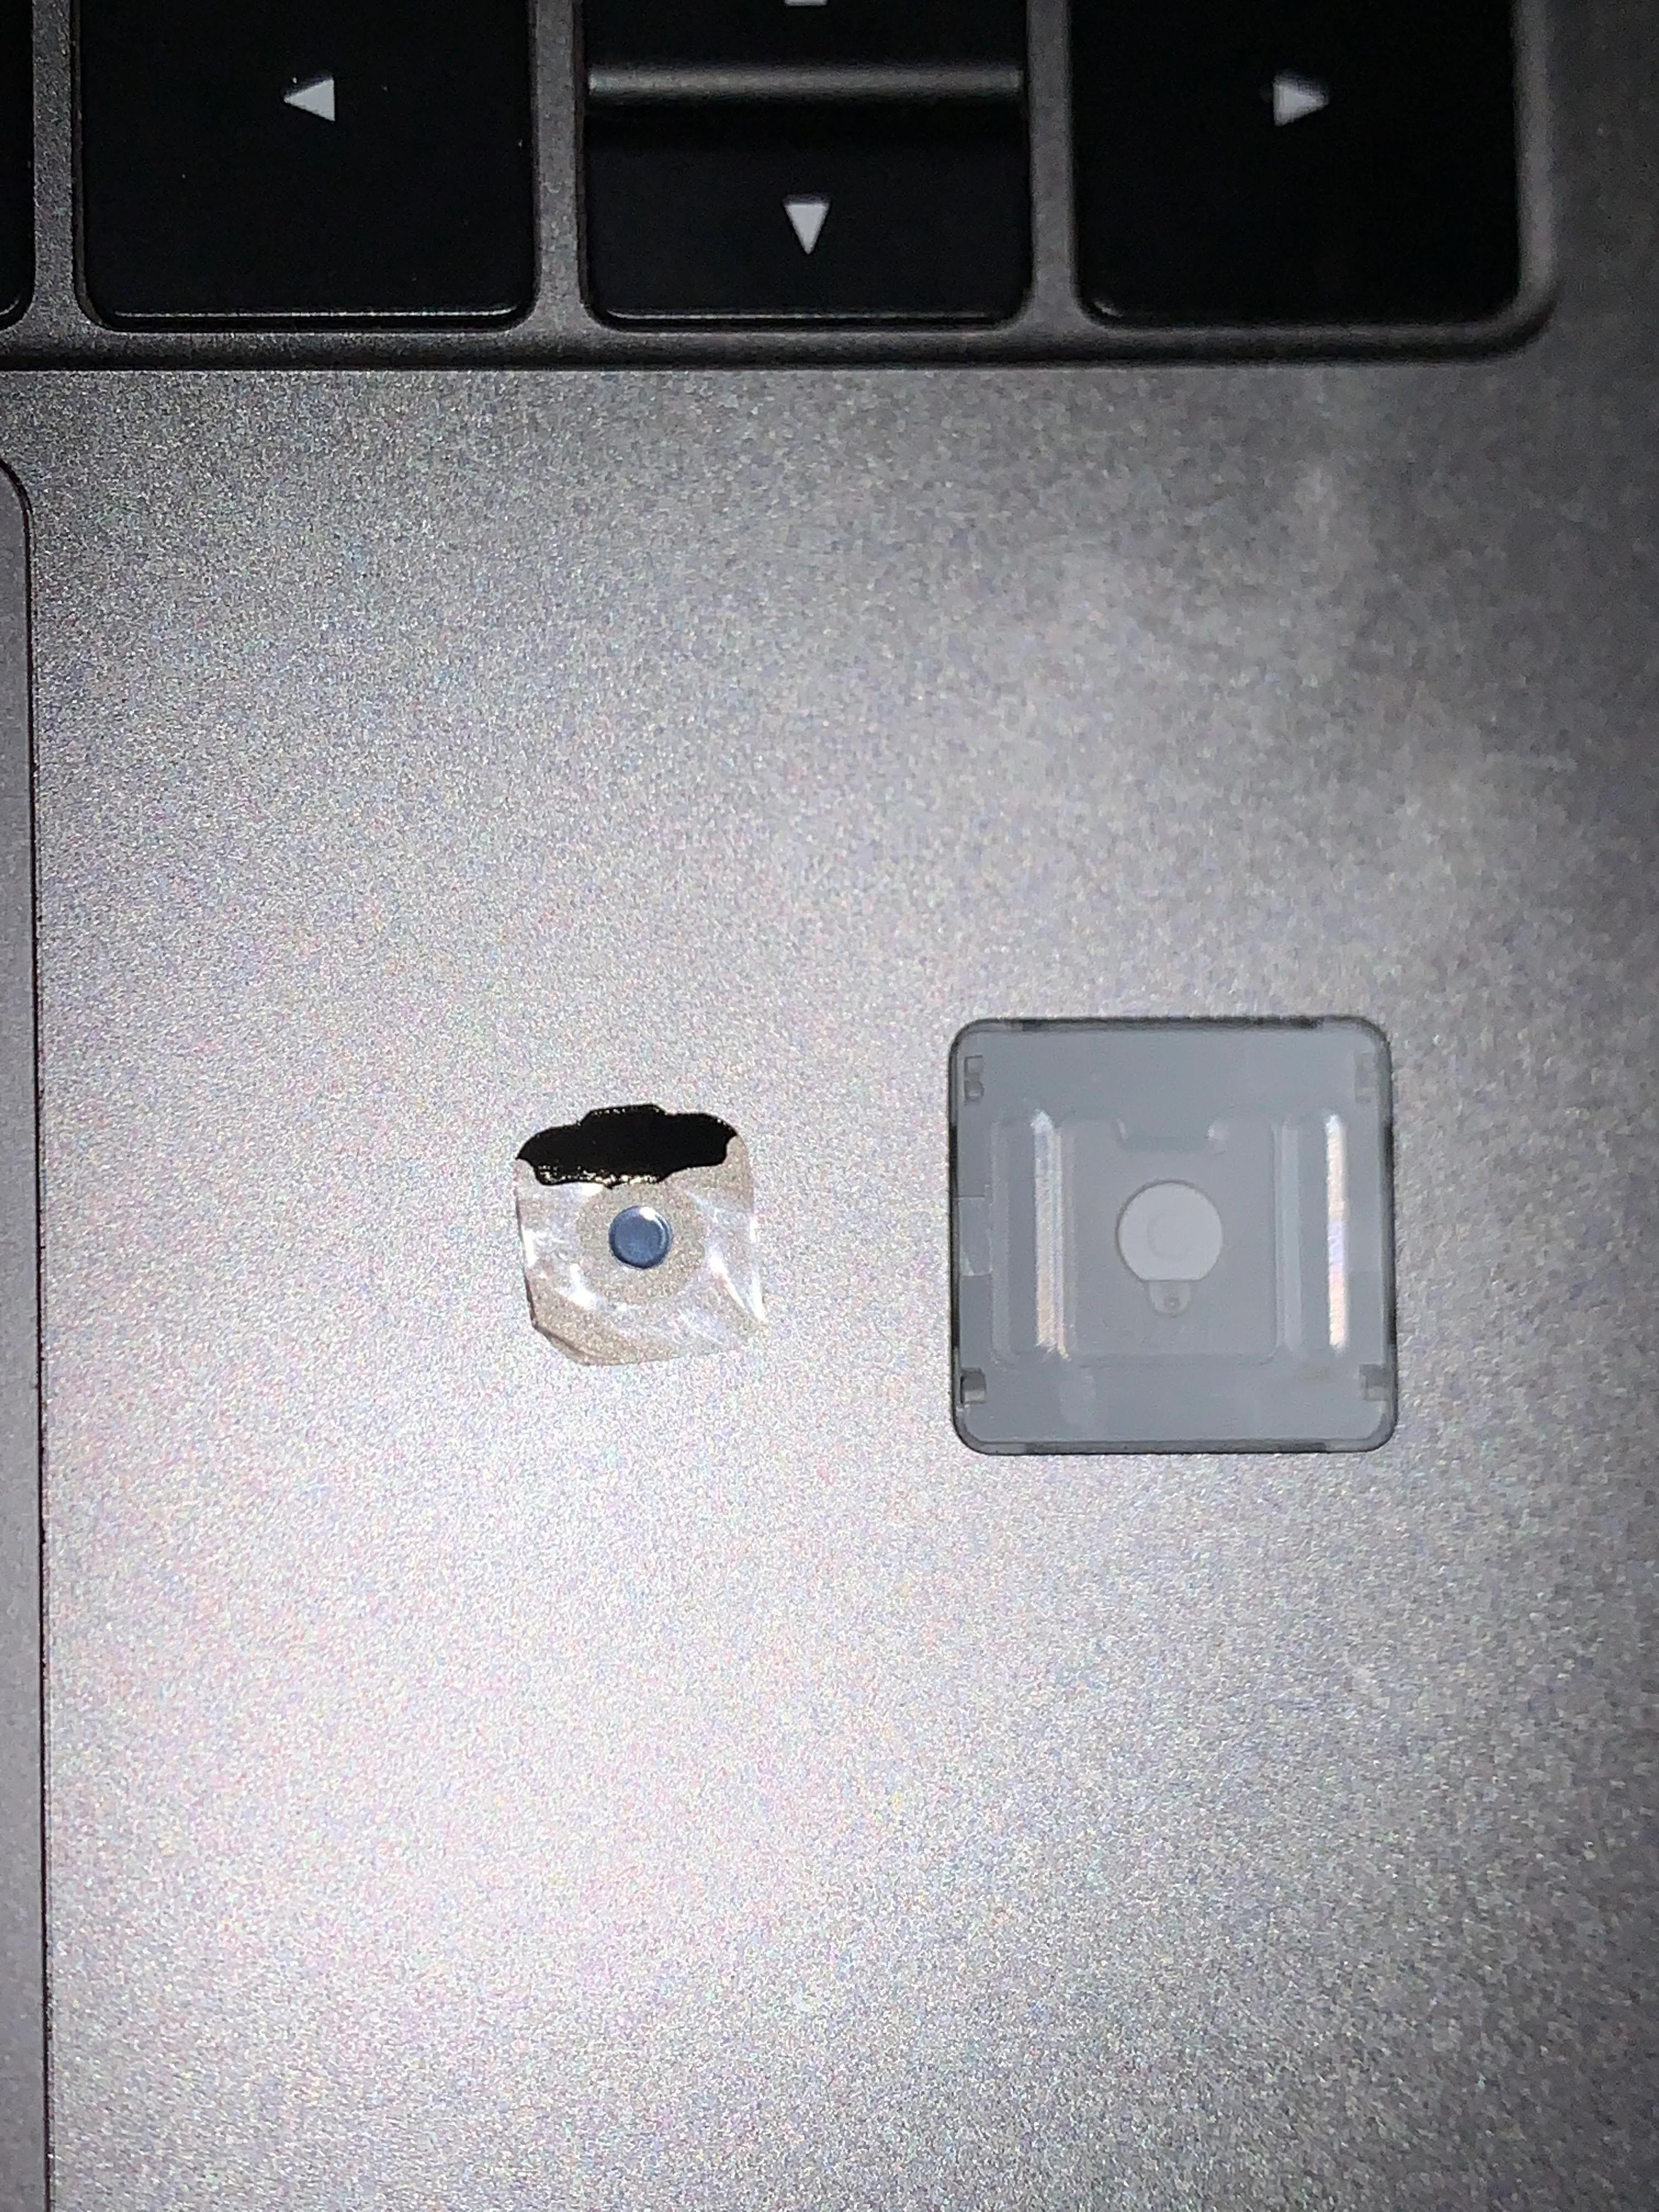 修复MacBook Pro老笔记本键盘个别键失灵